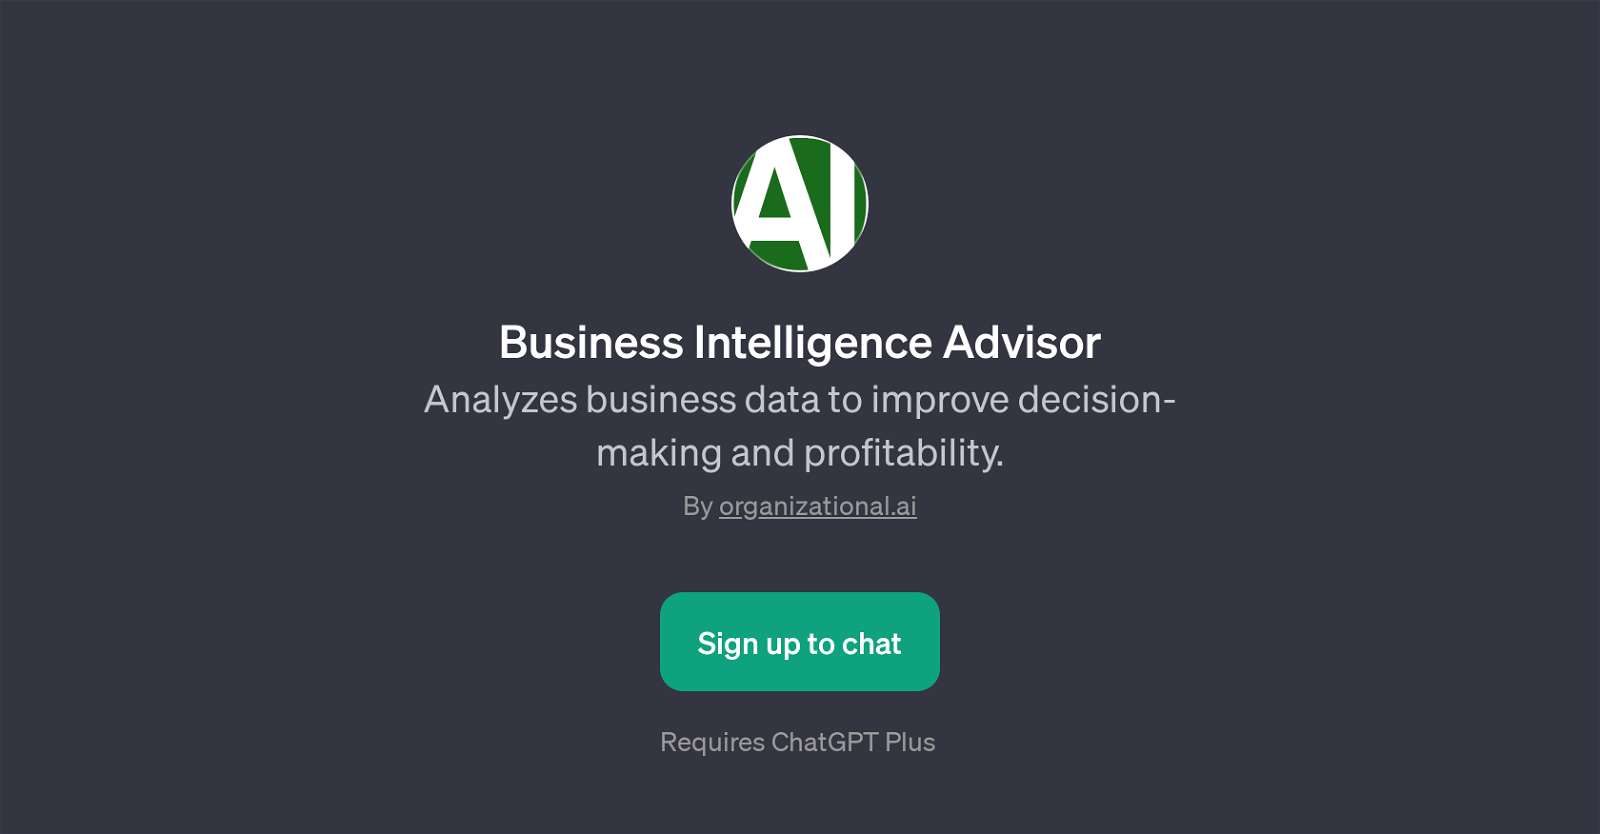 Business Intelligence Advisor website